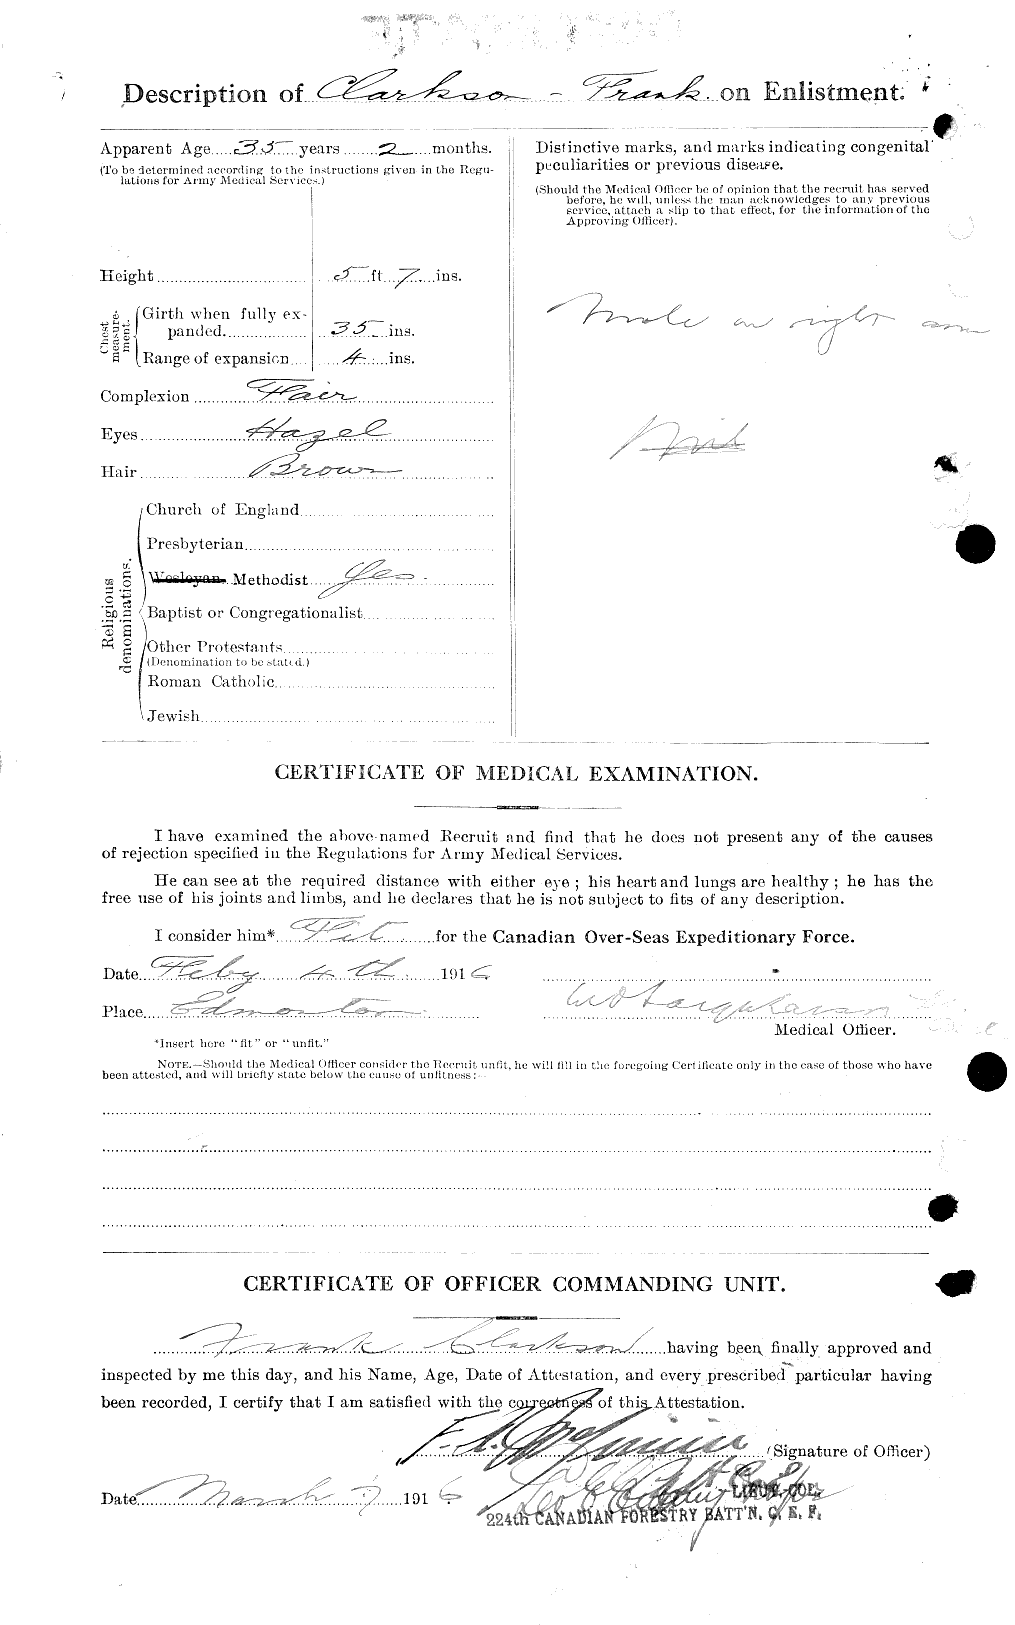 Dossiers du Personnel de la Première Guerre mondiale - CEC 023637b